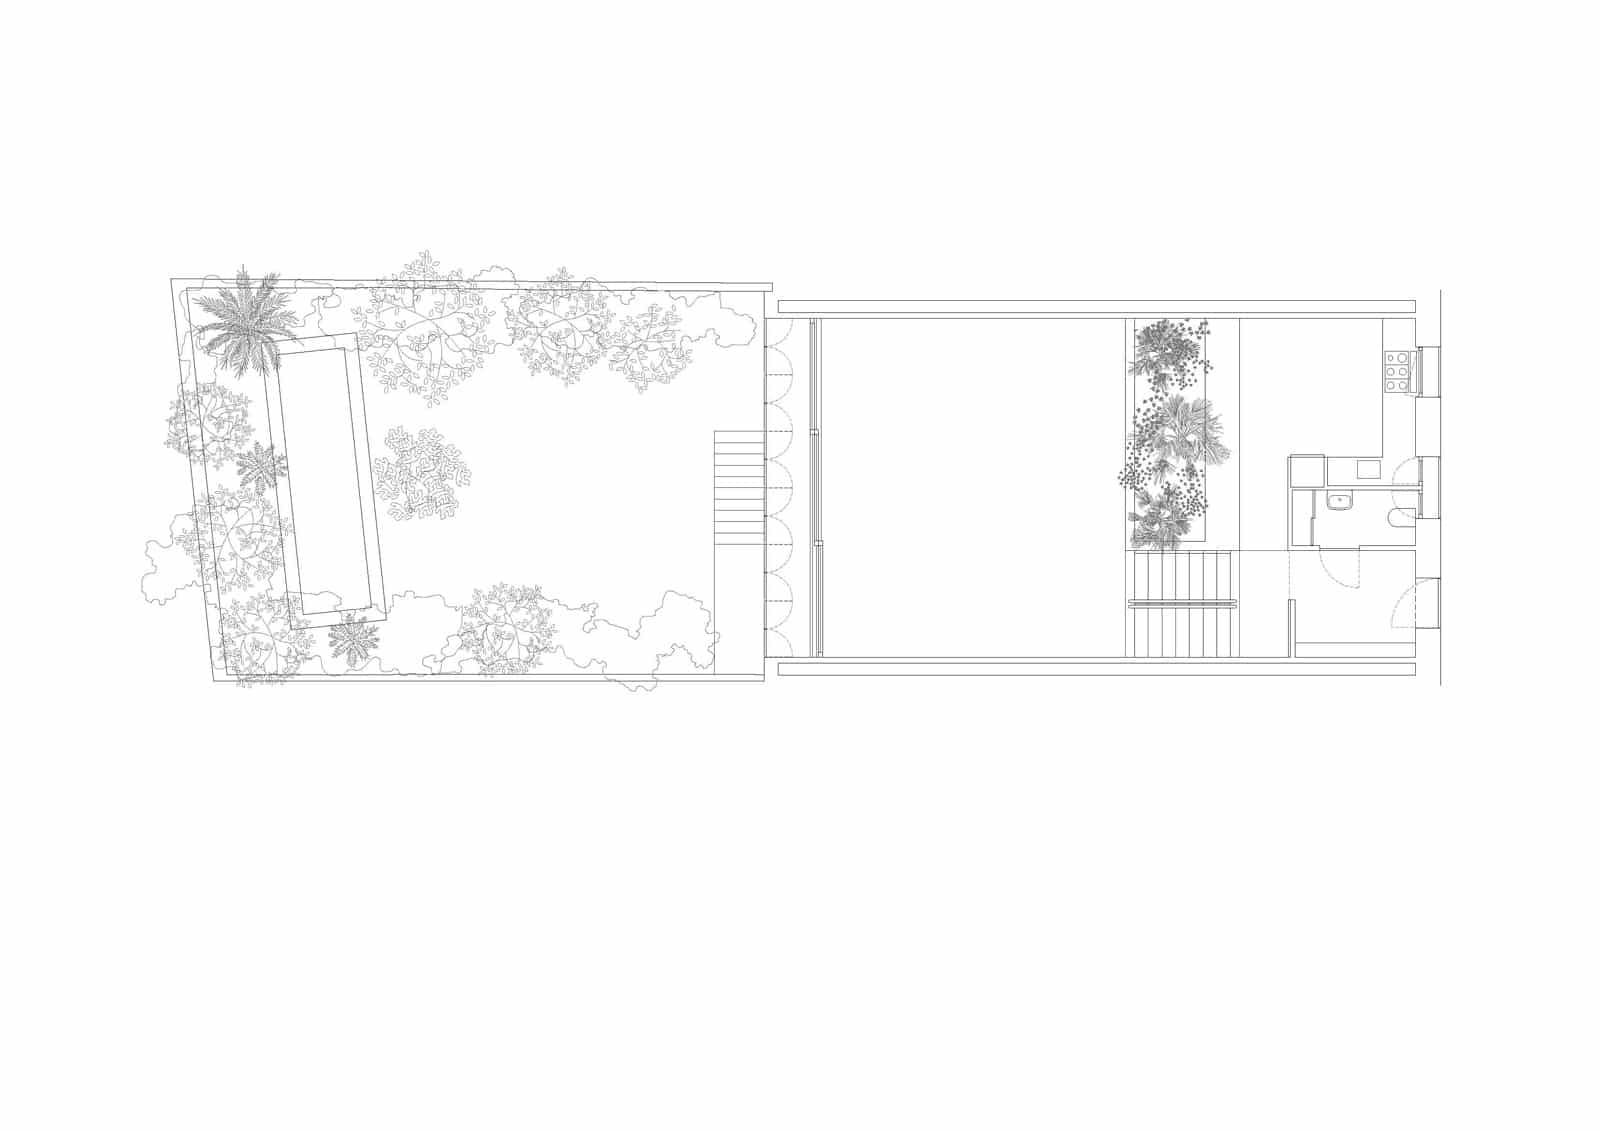 Verdi House  - 20220211 ArquitecturaG VerdiHouse 9.2 53